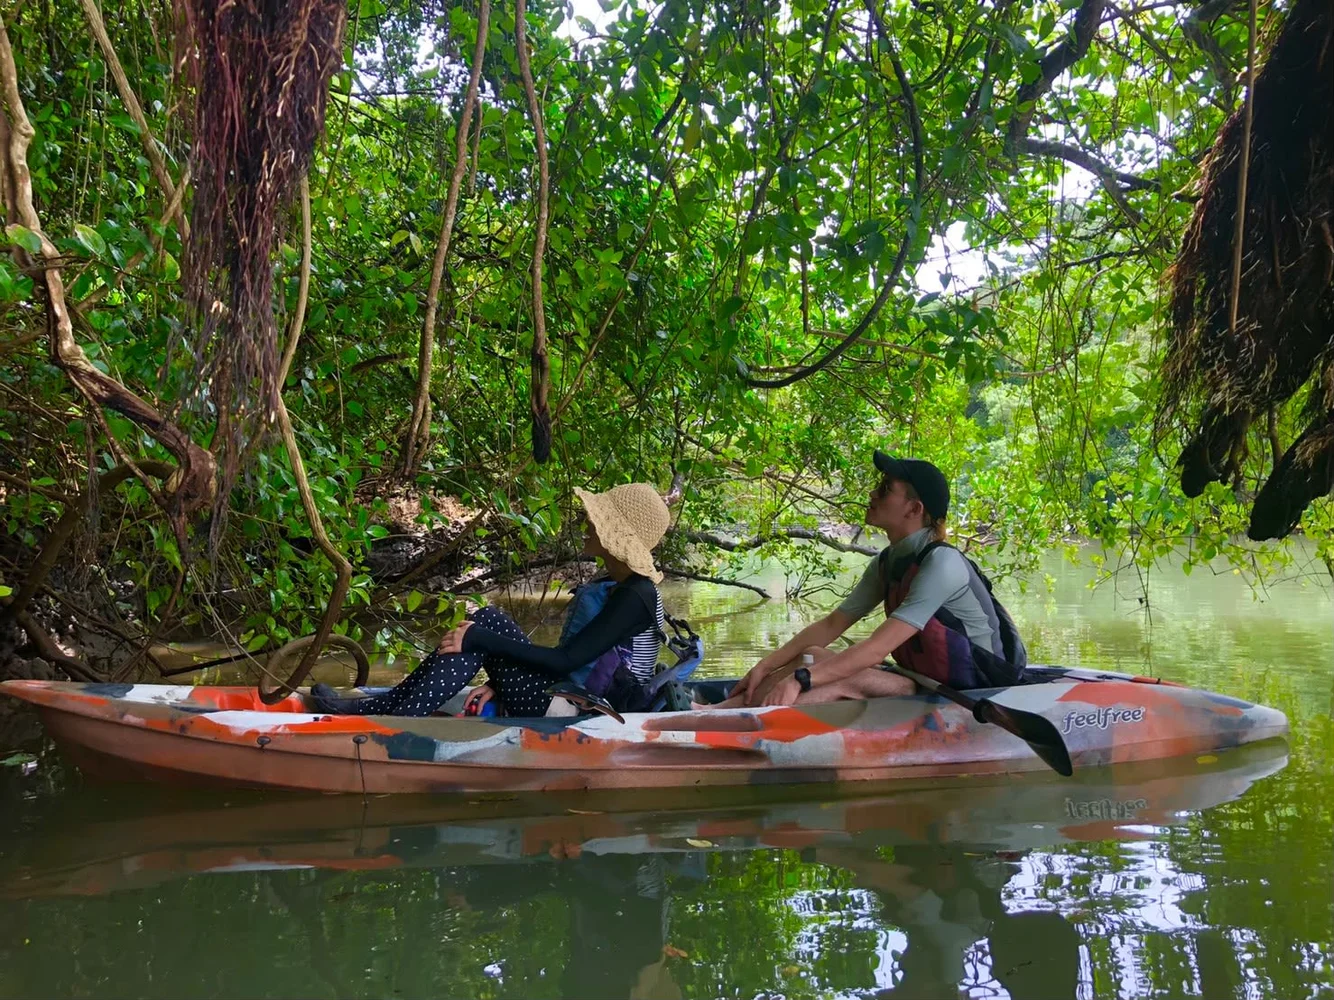 Hija River Mangrove Kayak Tour in Kadena, Okinawa